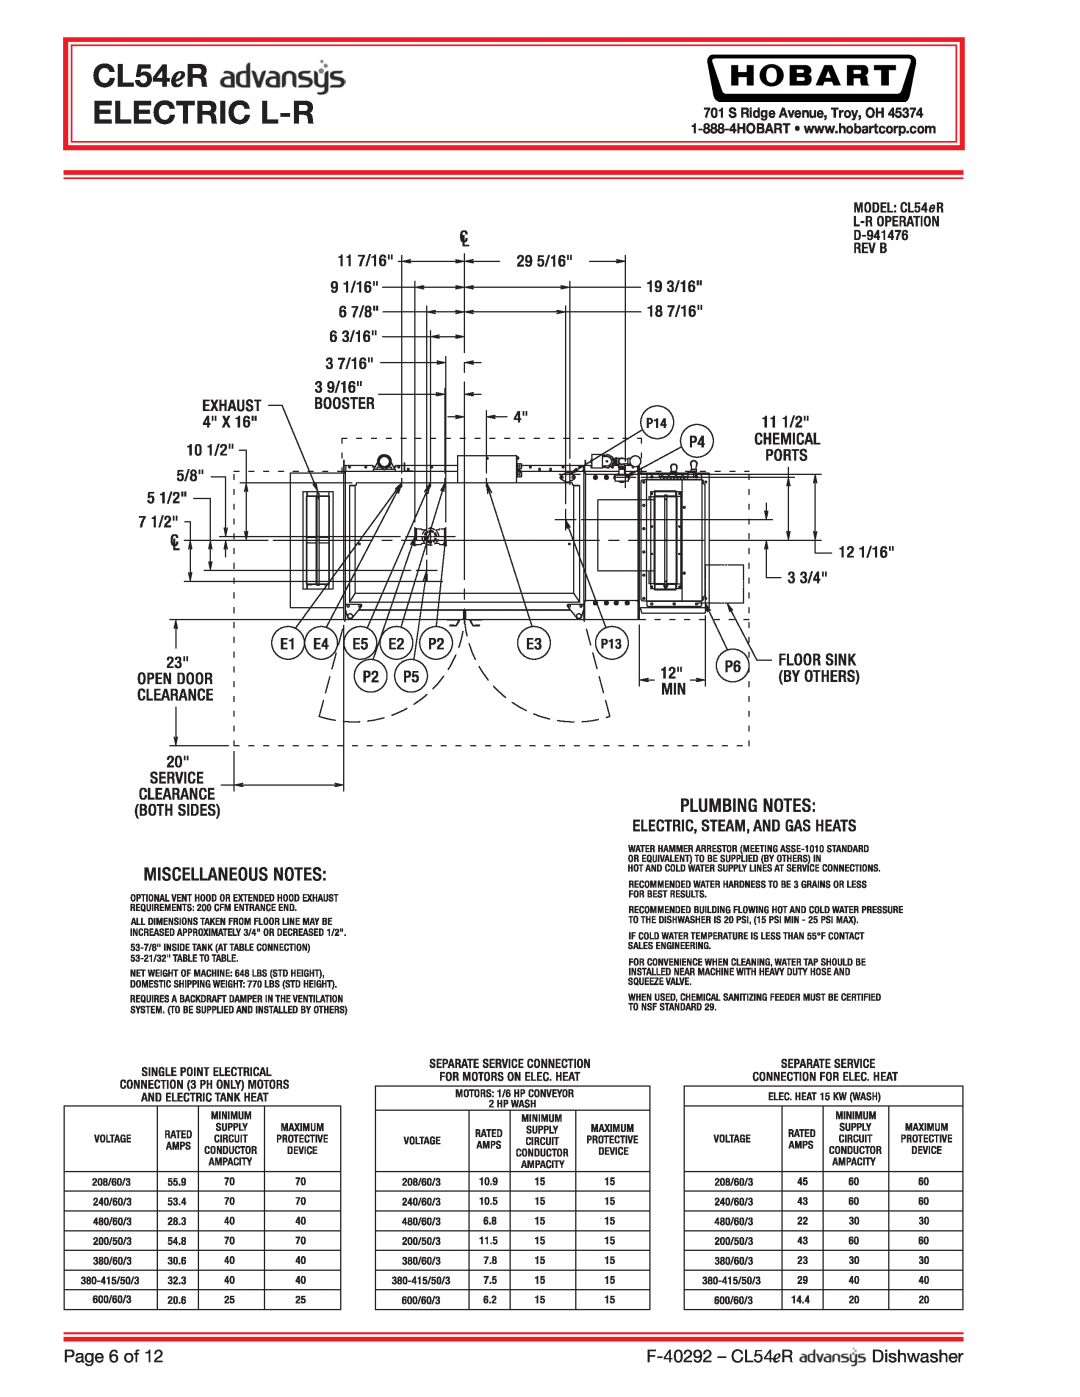 Hobart CL54ER dimensions CL54eR ELECTRIC L-R, Page 6 of, F-40292- CL54eR, Dishwasher, S Ridge Avenue, Troy, OH 